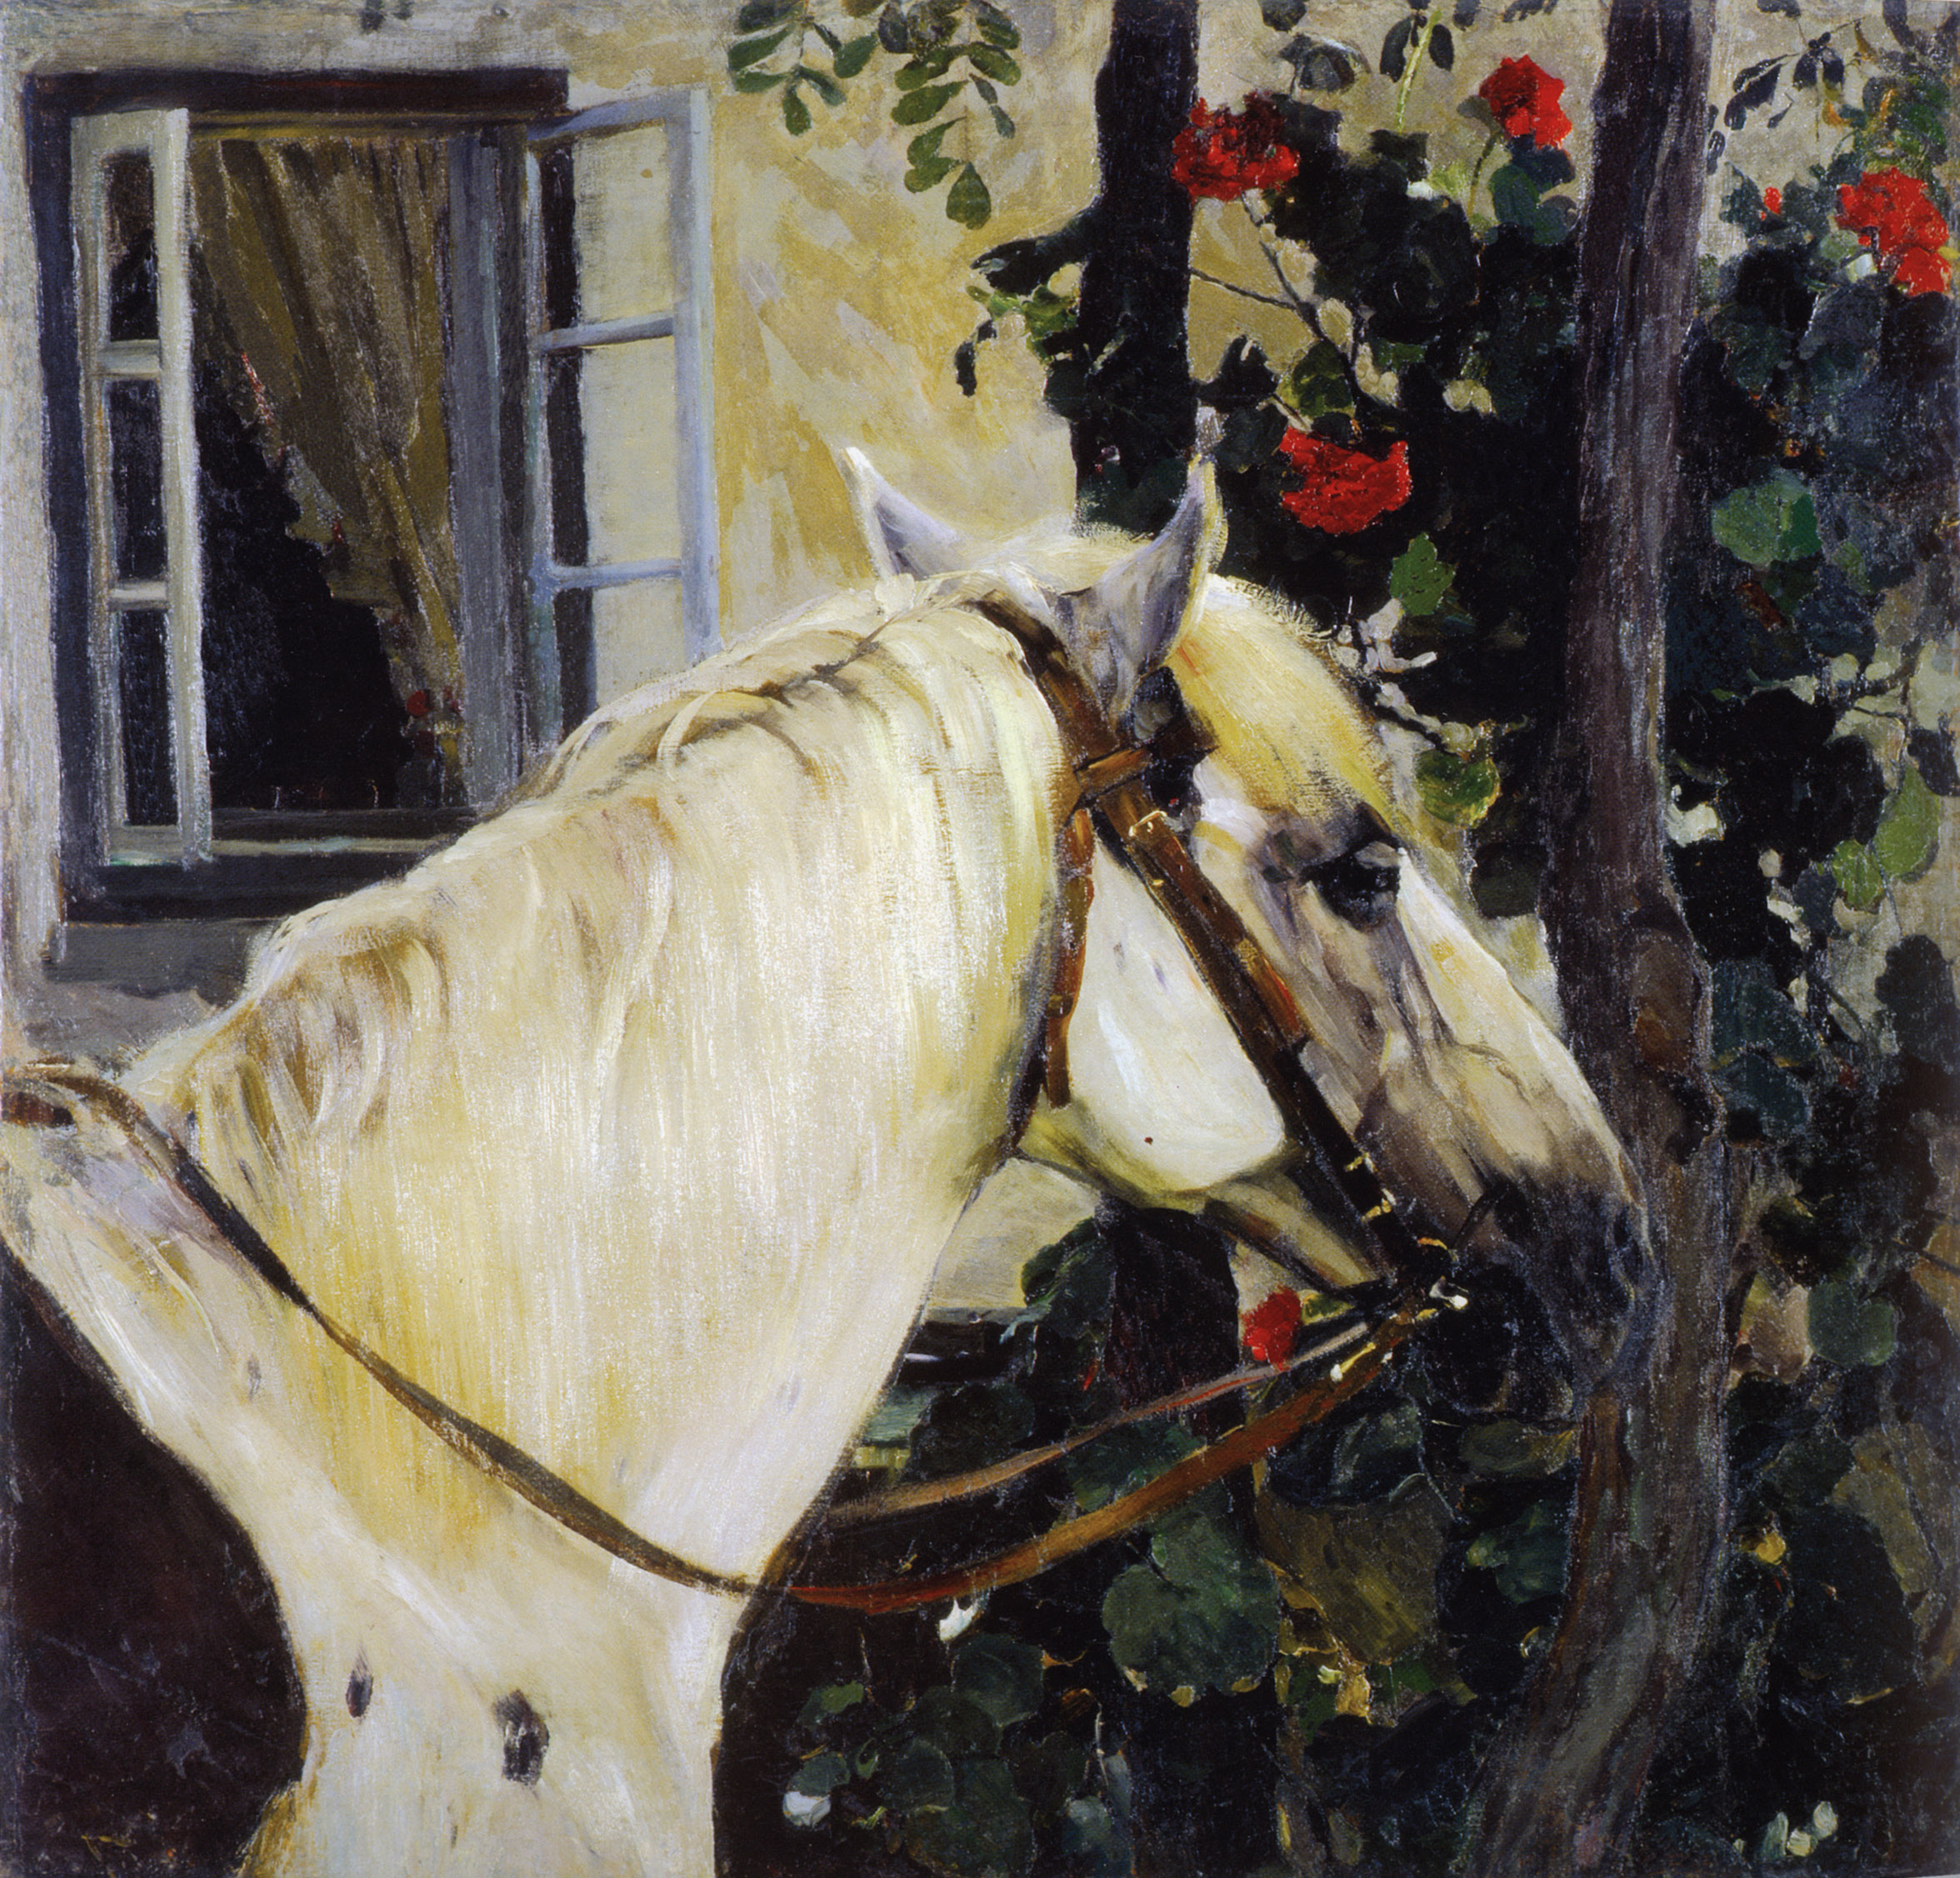 Нестеров М.. Голова лошади. Конец 1910-х